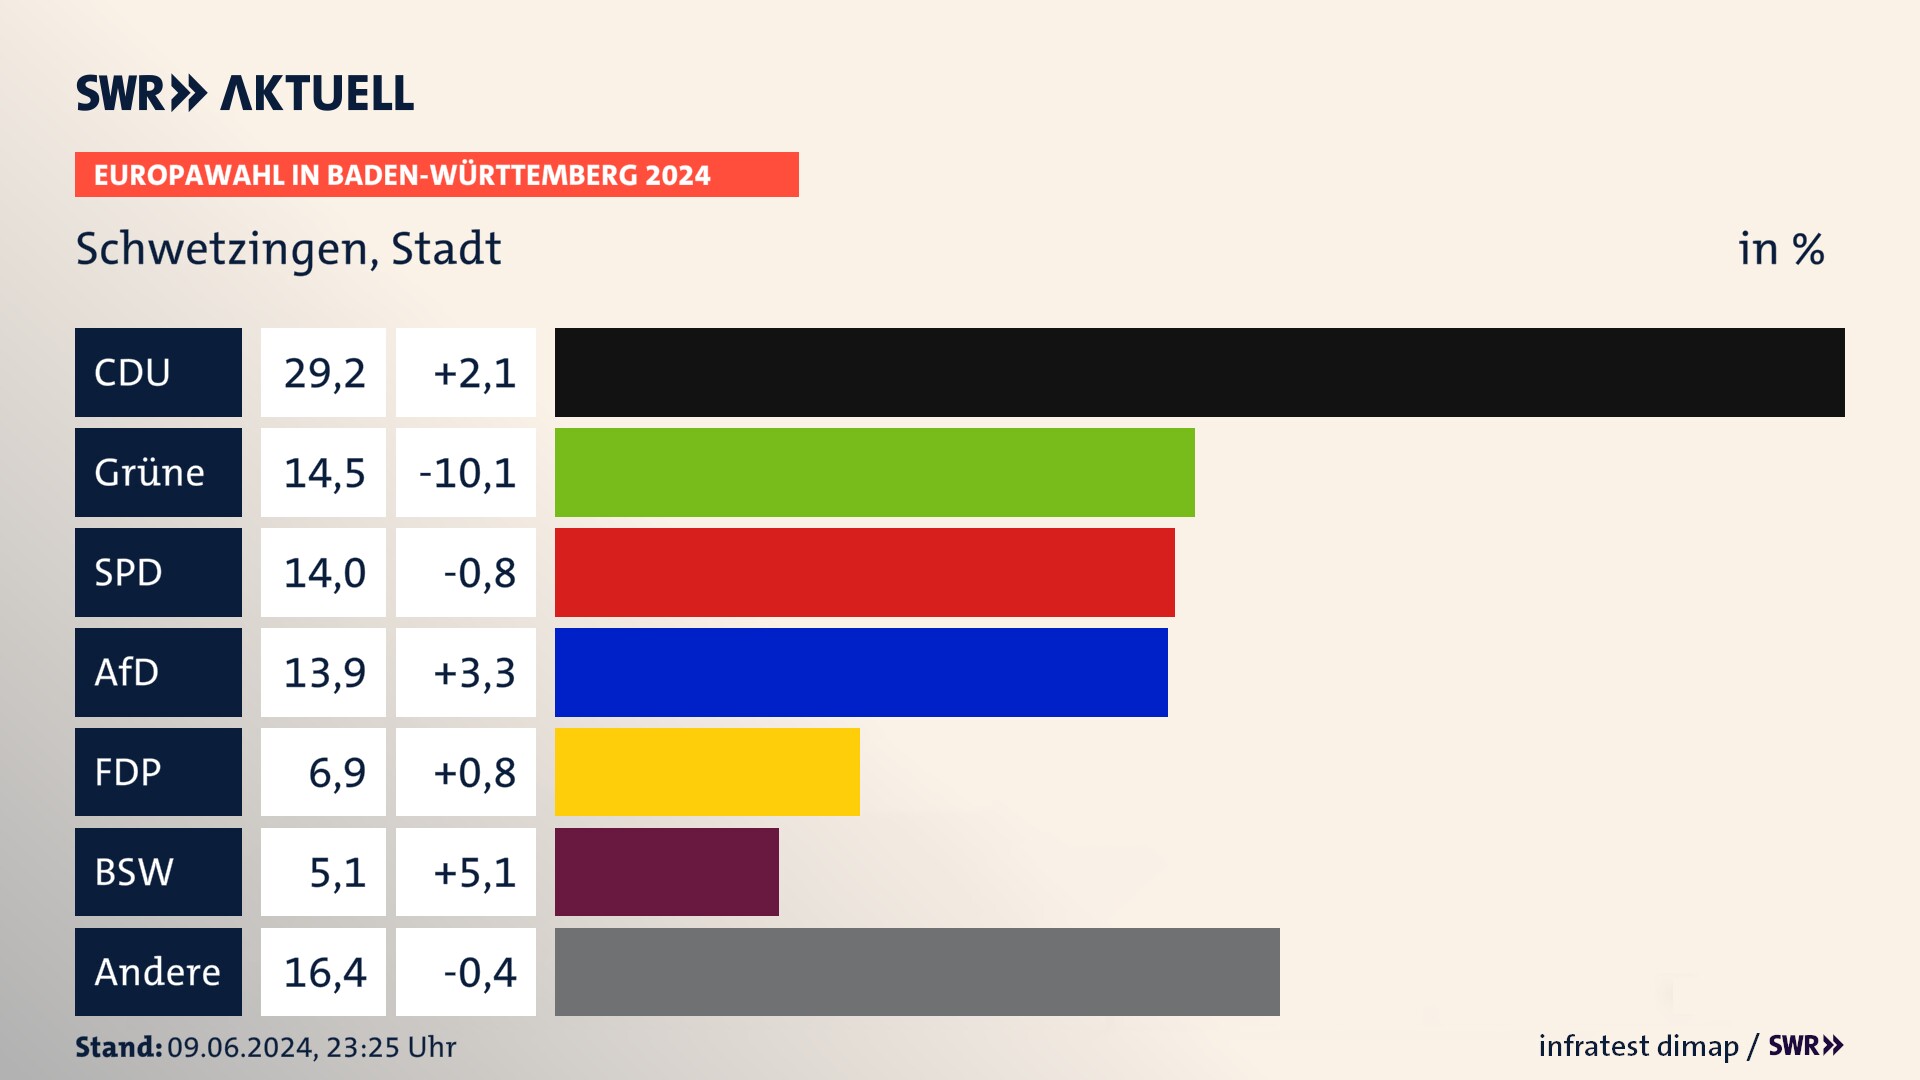 Europawahl 2024 Endergebnis Zweitstimme für Schwetzingen, Stadt. In Schwetzingen, Stadt erzielt die CDU 29,2 Prozent der gültigen  Stimmen. Die Grünen landen bei 14,5 Prozent. Die SPD erreicht 14,0 Prozent. Die AfD kommt auf 13,9 Prozent. Die FDP landet bei 6,9 Prozent. Die 2019 nicht angetretene Partei BSW bekommt 5,1 Prozent.